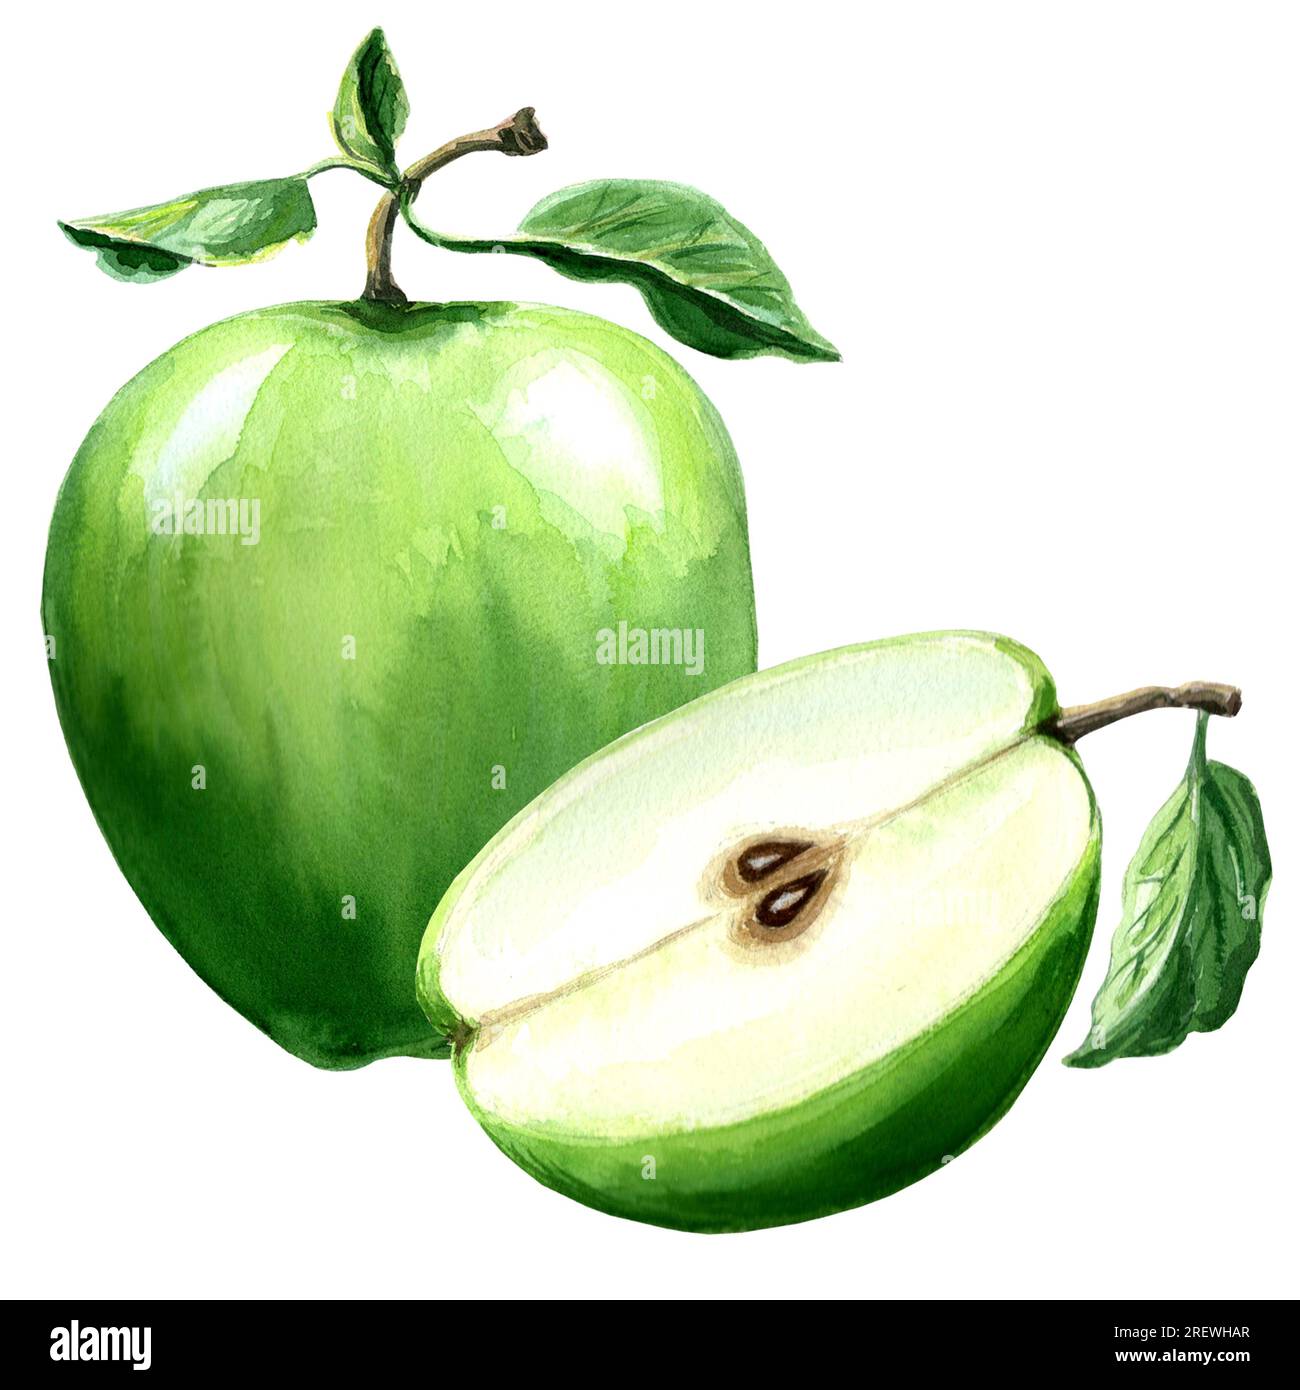 Aquarelldarstellung eines grünen Apfels. Handgezeichnete Aquarell-Grafik JPEG für Design, Textilien, Geschenkpapier, Tapeten, Cover, Grußkarten Stockfoto